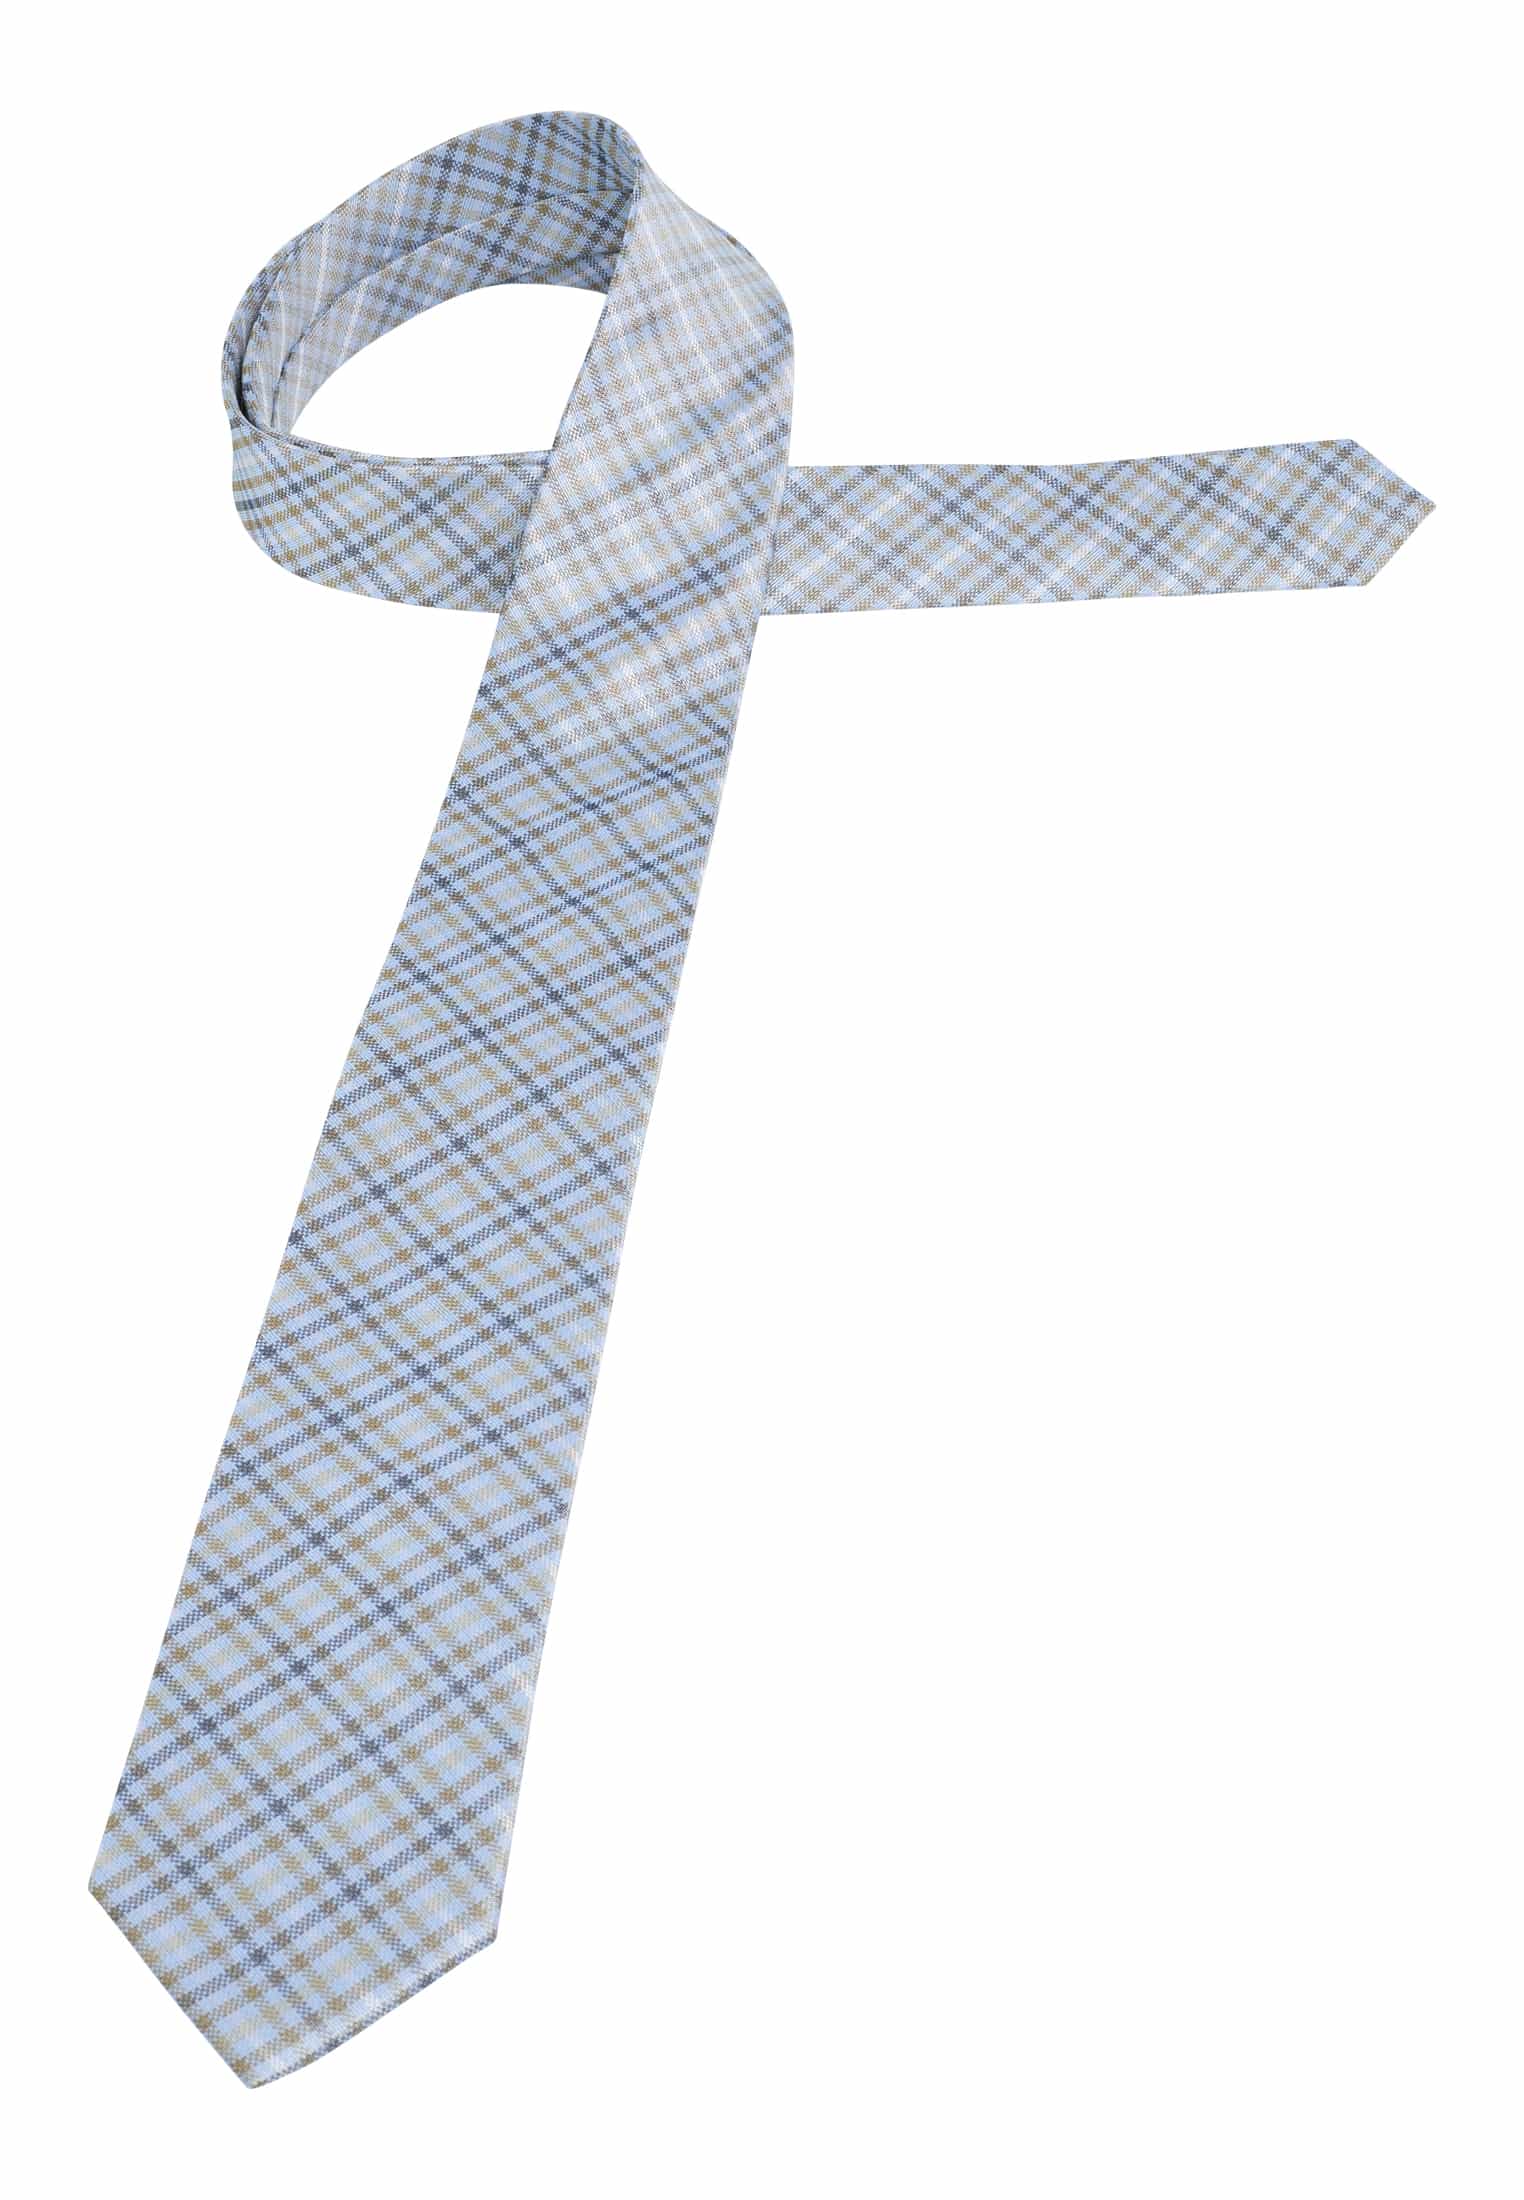 Krawatte in blau/grün kariert | blau/grün | 142 | 1AC01961-81-48-142